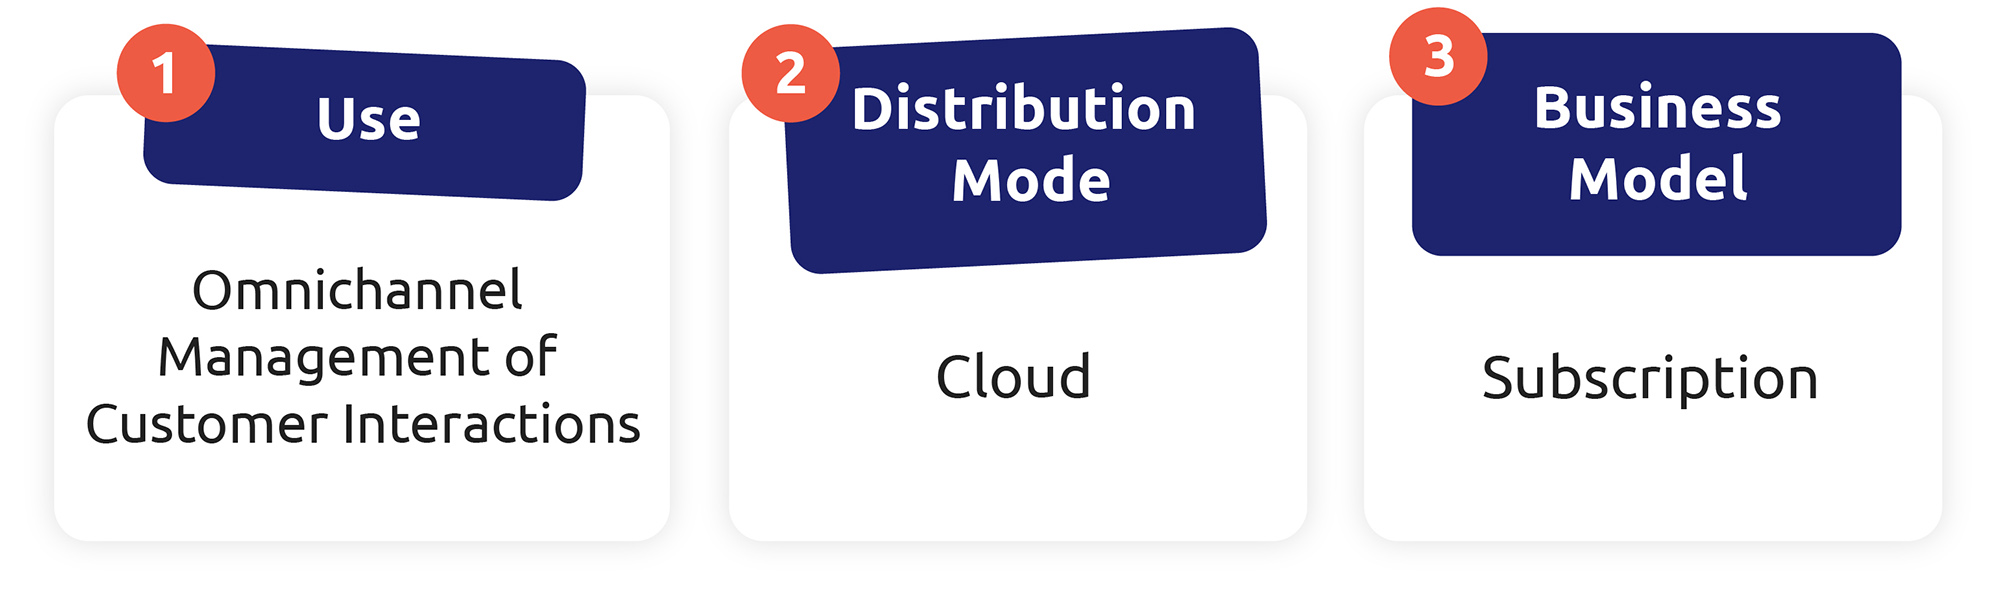 Die drei Merkmale eines CCaaS sind: Omnichannel-Management, cloudbasierte Verteilung und ein Abonnement-System.